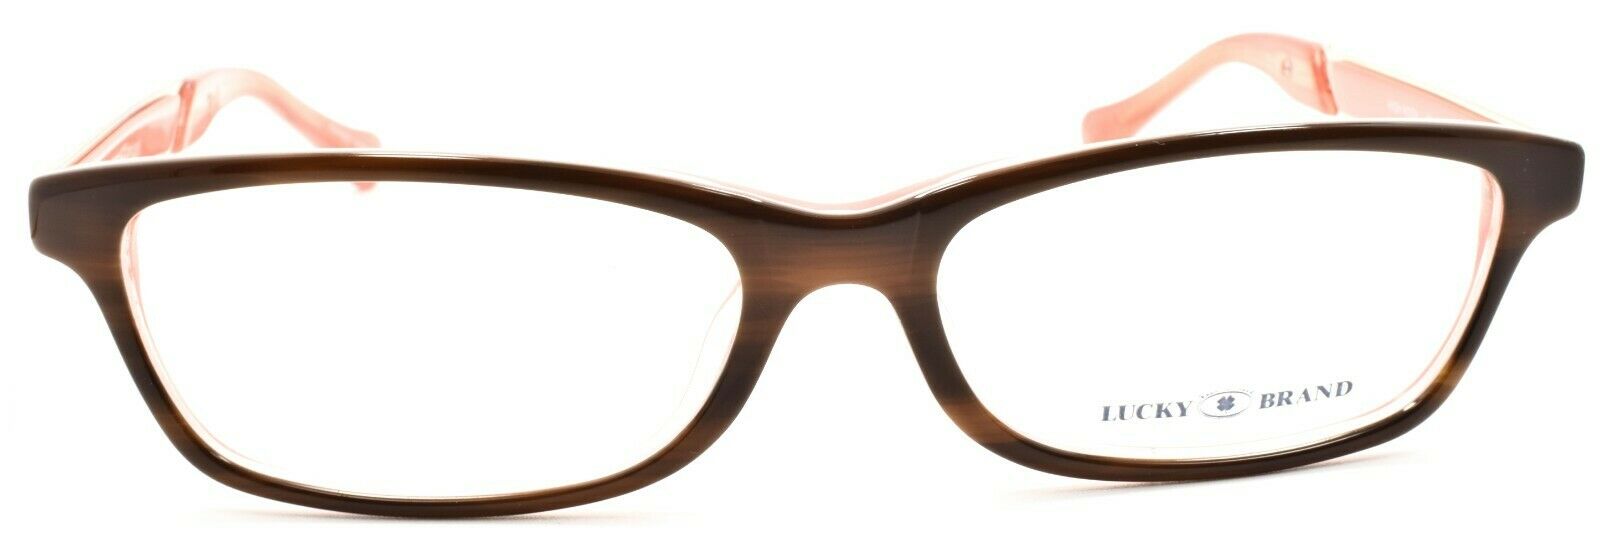 2-LUCKY BRAND High Noon Women's Eyeglasses Frames 53-16-140 Brown Horn + CASE-751286215229-IKSpecs